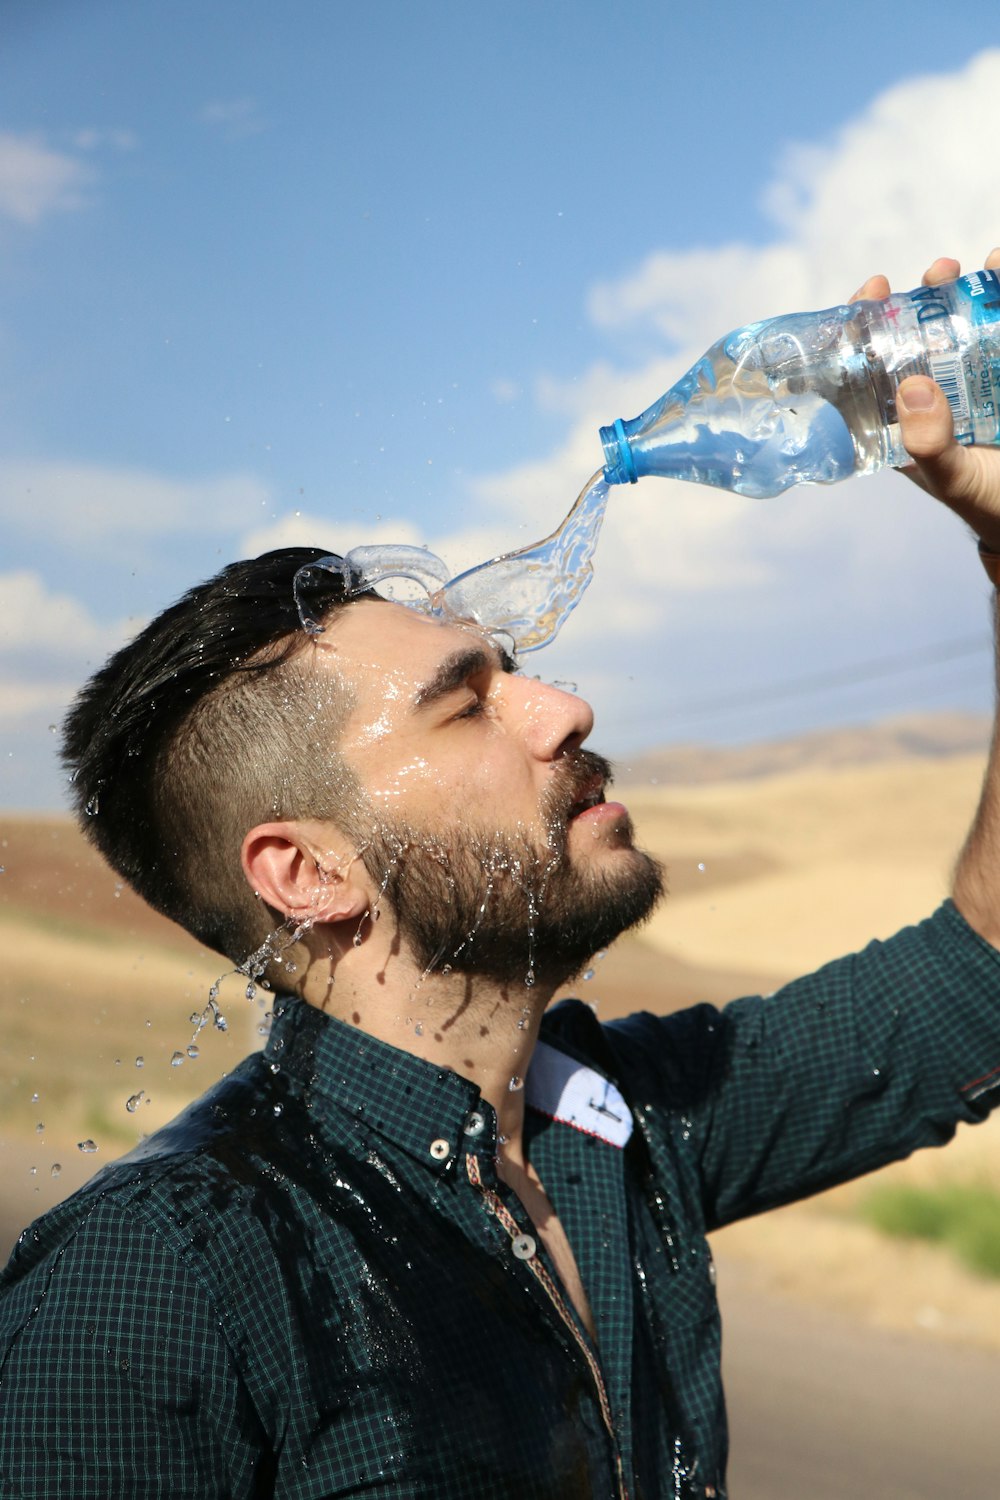 man in black shirt drinking water